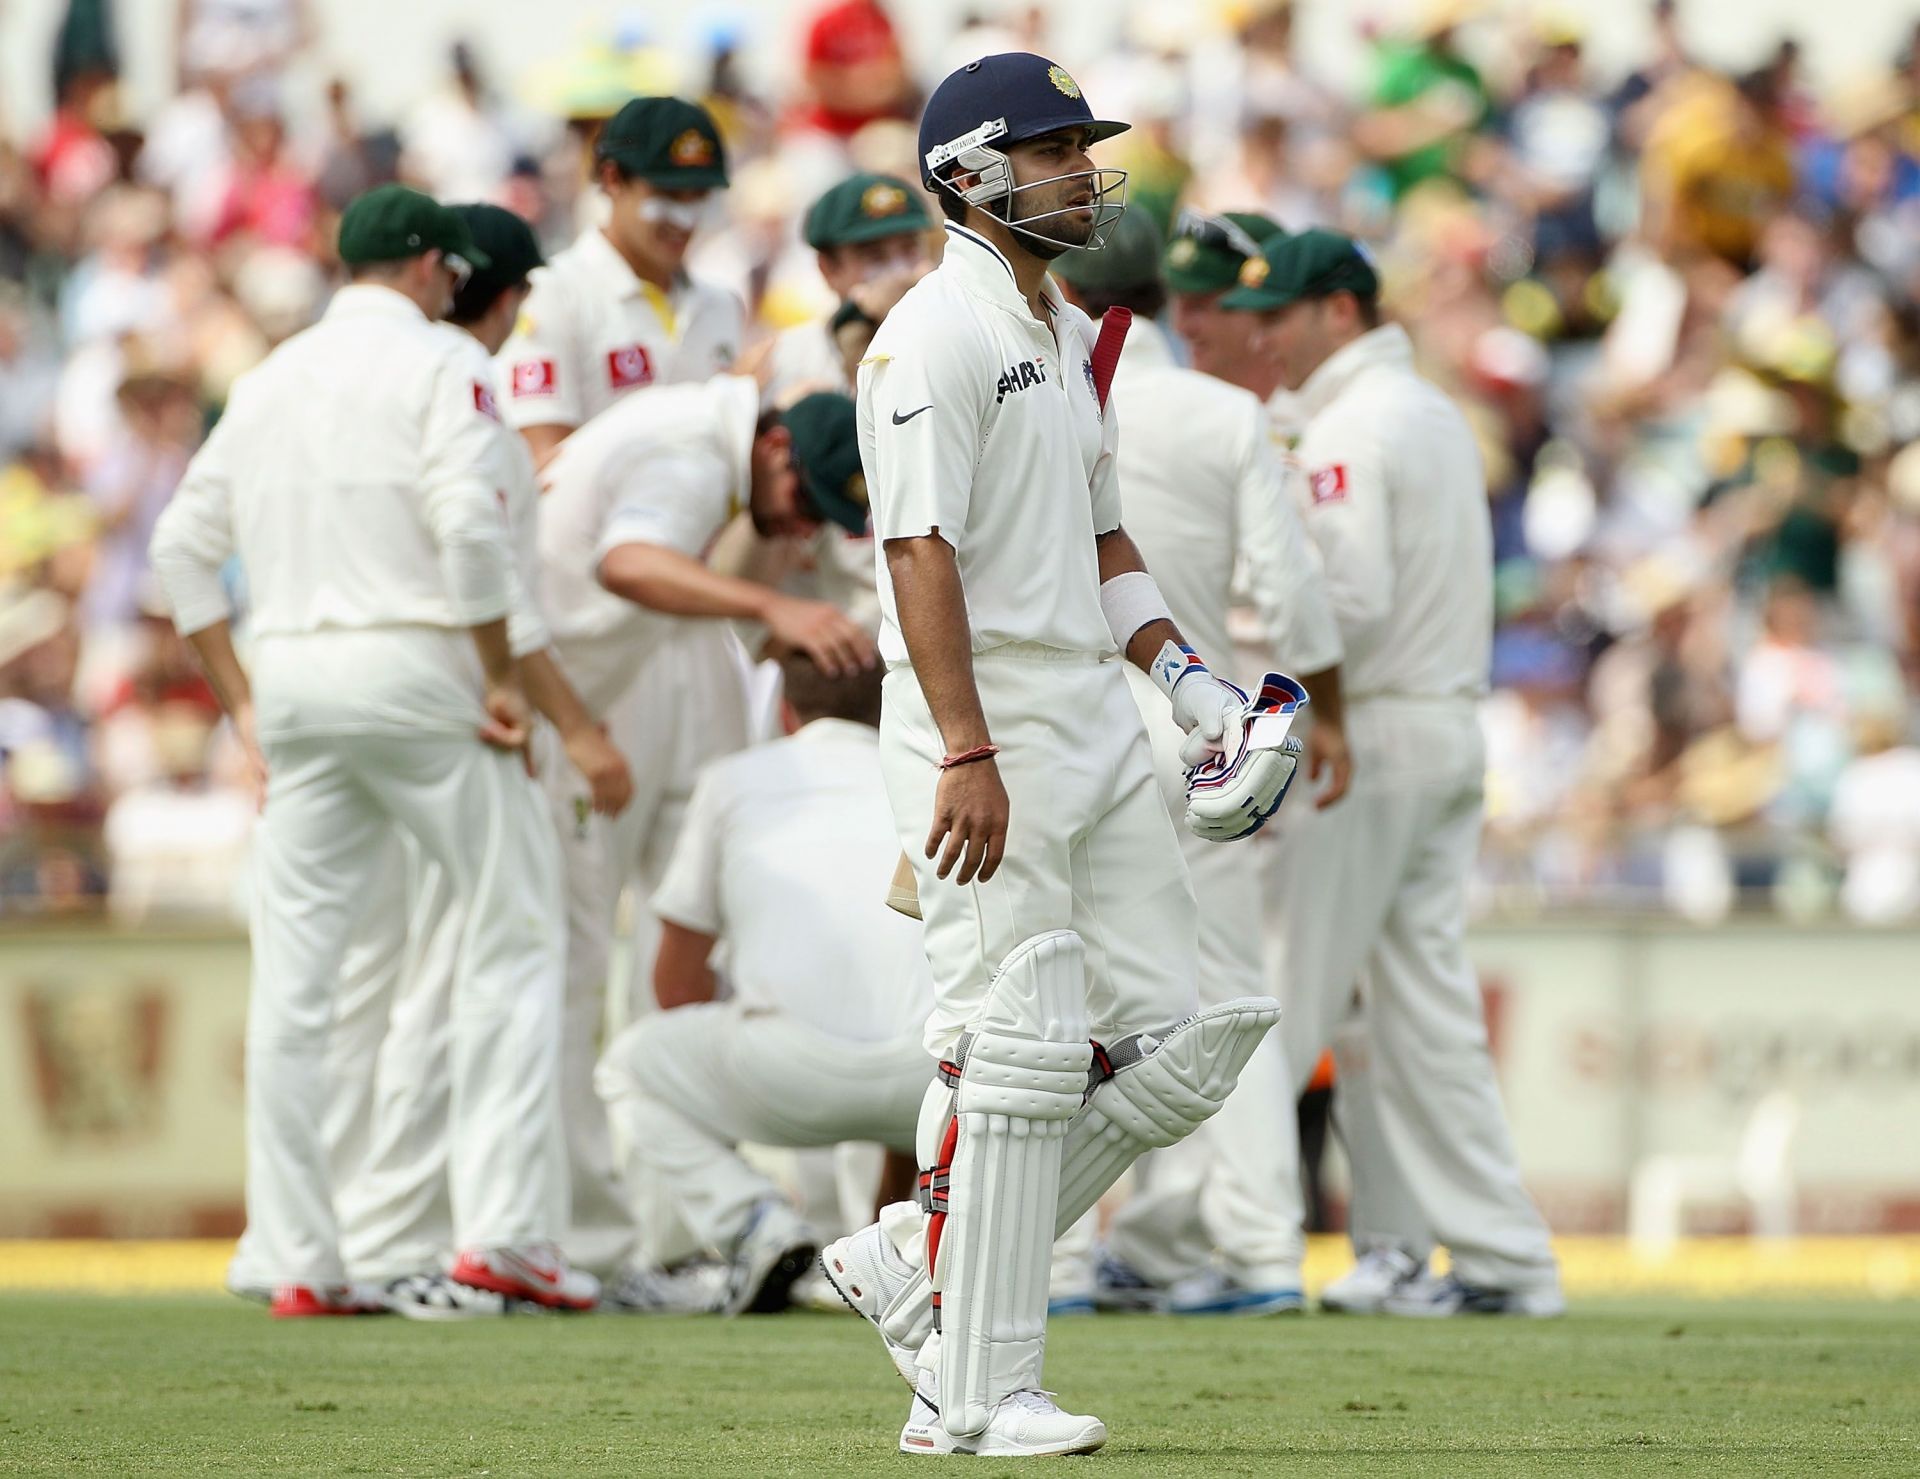 Australia v India - Third Test: Day 1